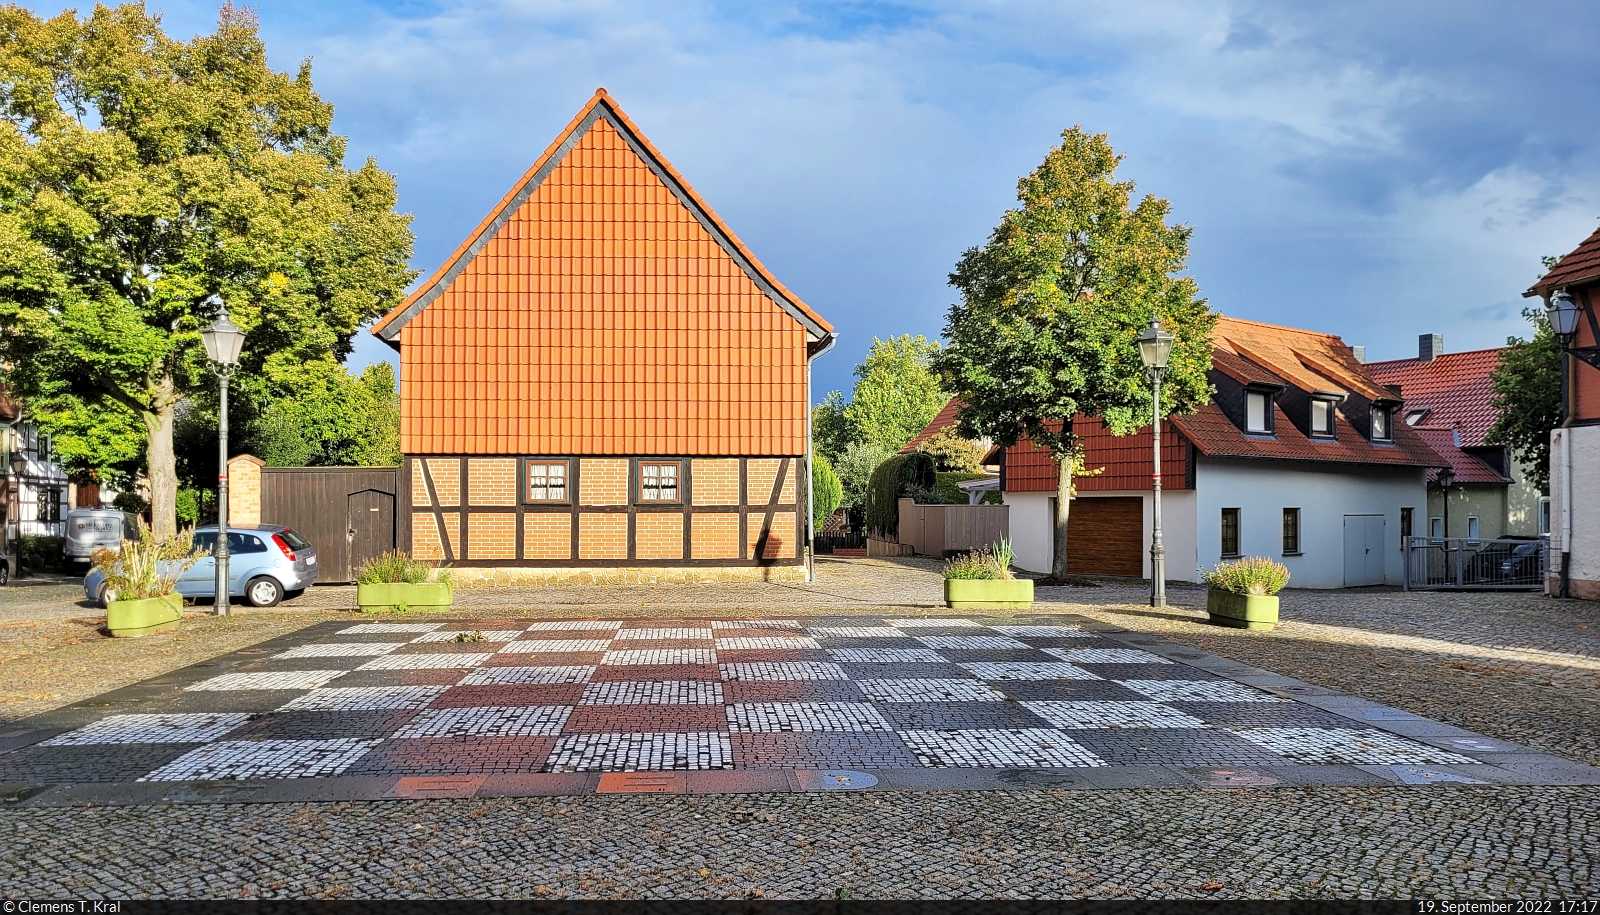 Das Schachspiel im Schachdorf Strbeck hat eine jahrhundertelange Tradition, weshalb es inzwischen als immaterielles UNESCO-Kulturerbe anerkannt wurde. Den Dreh- und Angelpunkt des Dorfes bildet der Platz am Schachspiel, wo auch Lebendschach gespielt werden kann. Hhepunkt eines jeden Jahres ist das dreitgige Schach- und Dorffest im Frhsommer.

🕓 19.9.2022 | 17:17 Uhr